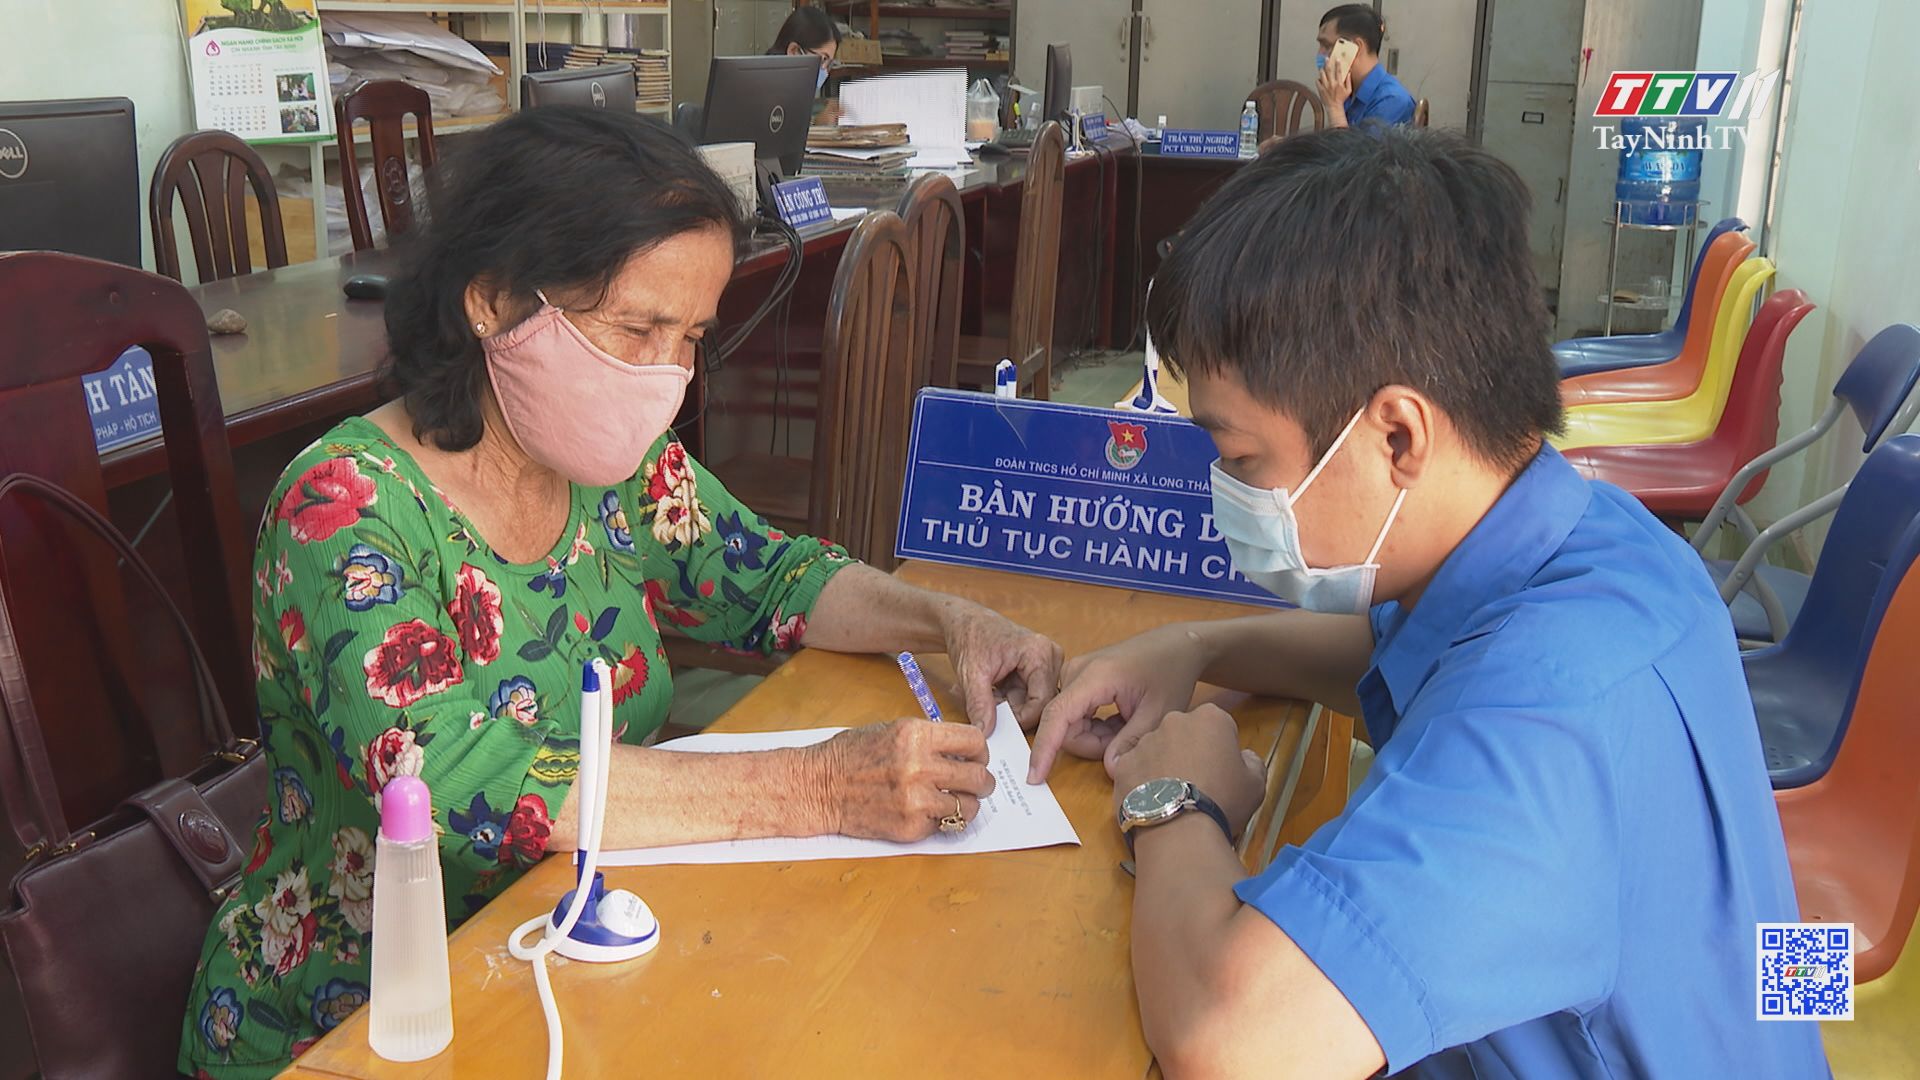 Tuổi trẻ Tây Ninh chung tay cải cách thủ tục hành chính | CẢI CÁCH HÀNH CHÍNH | TayNinhTV